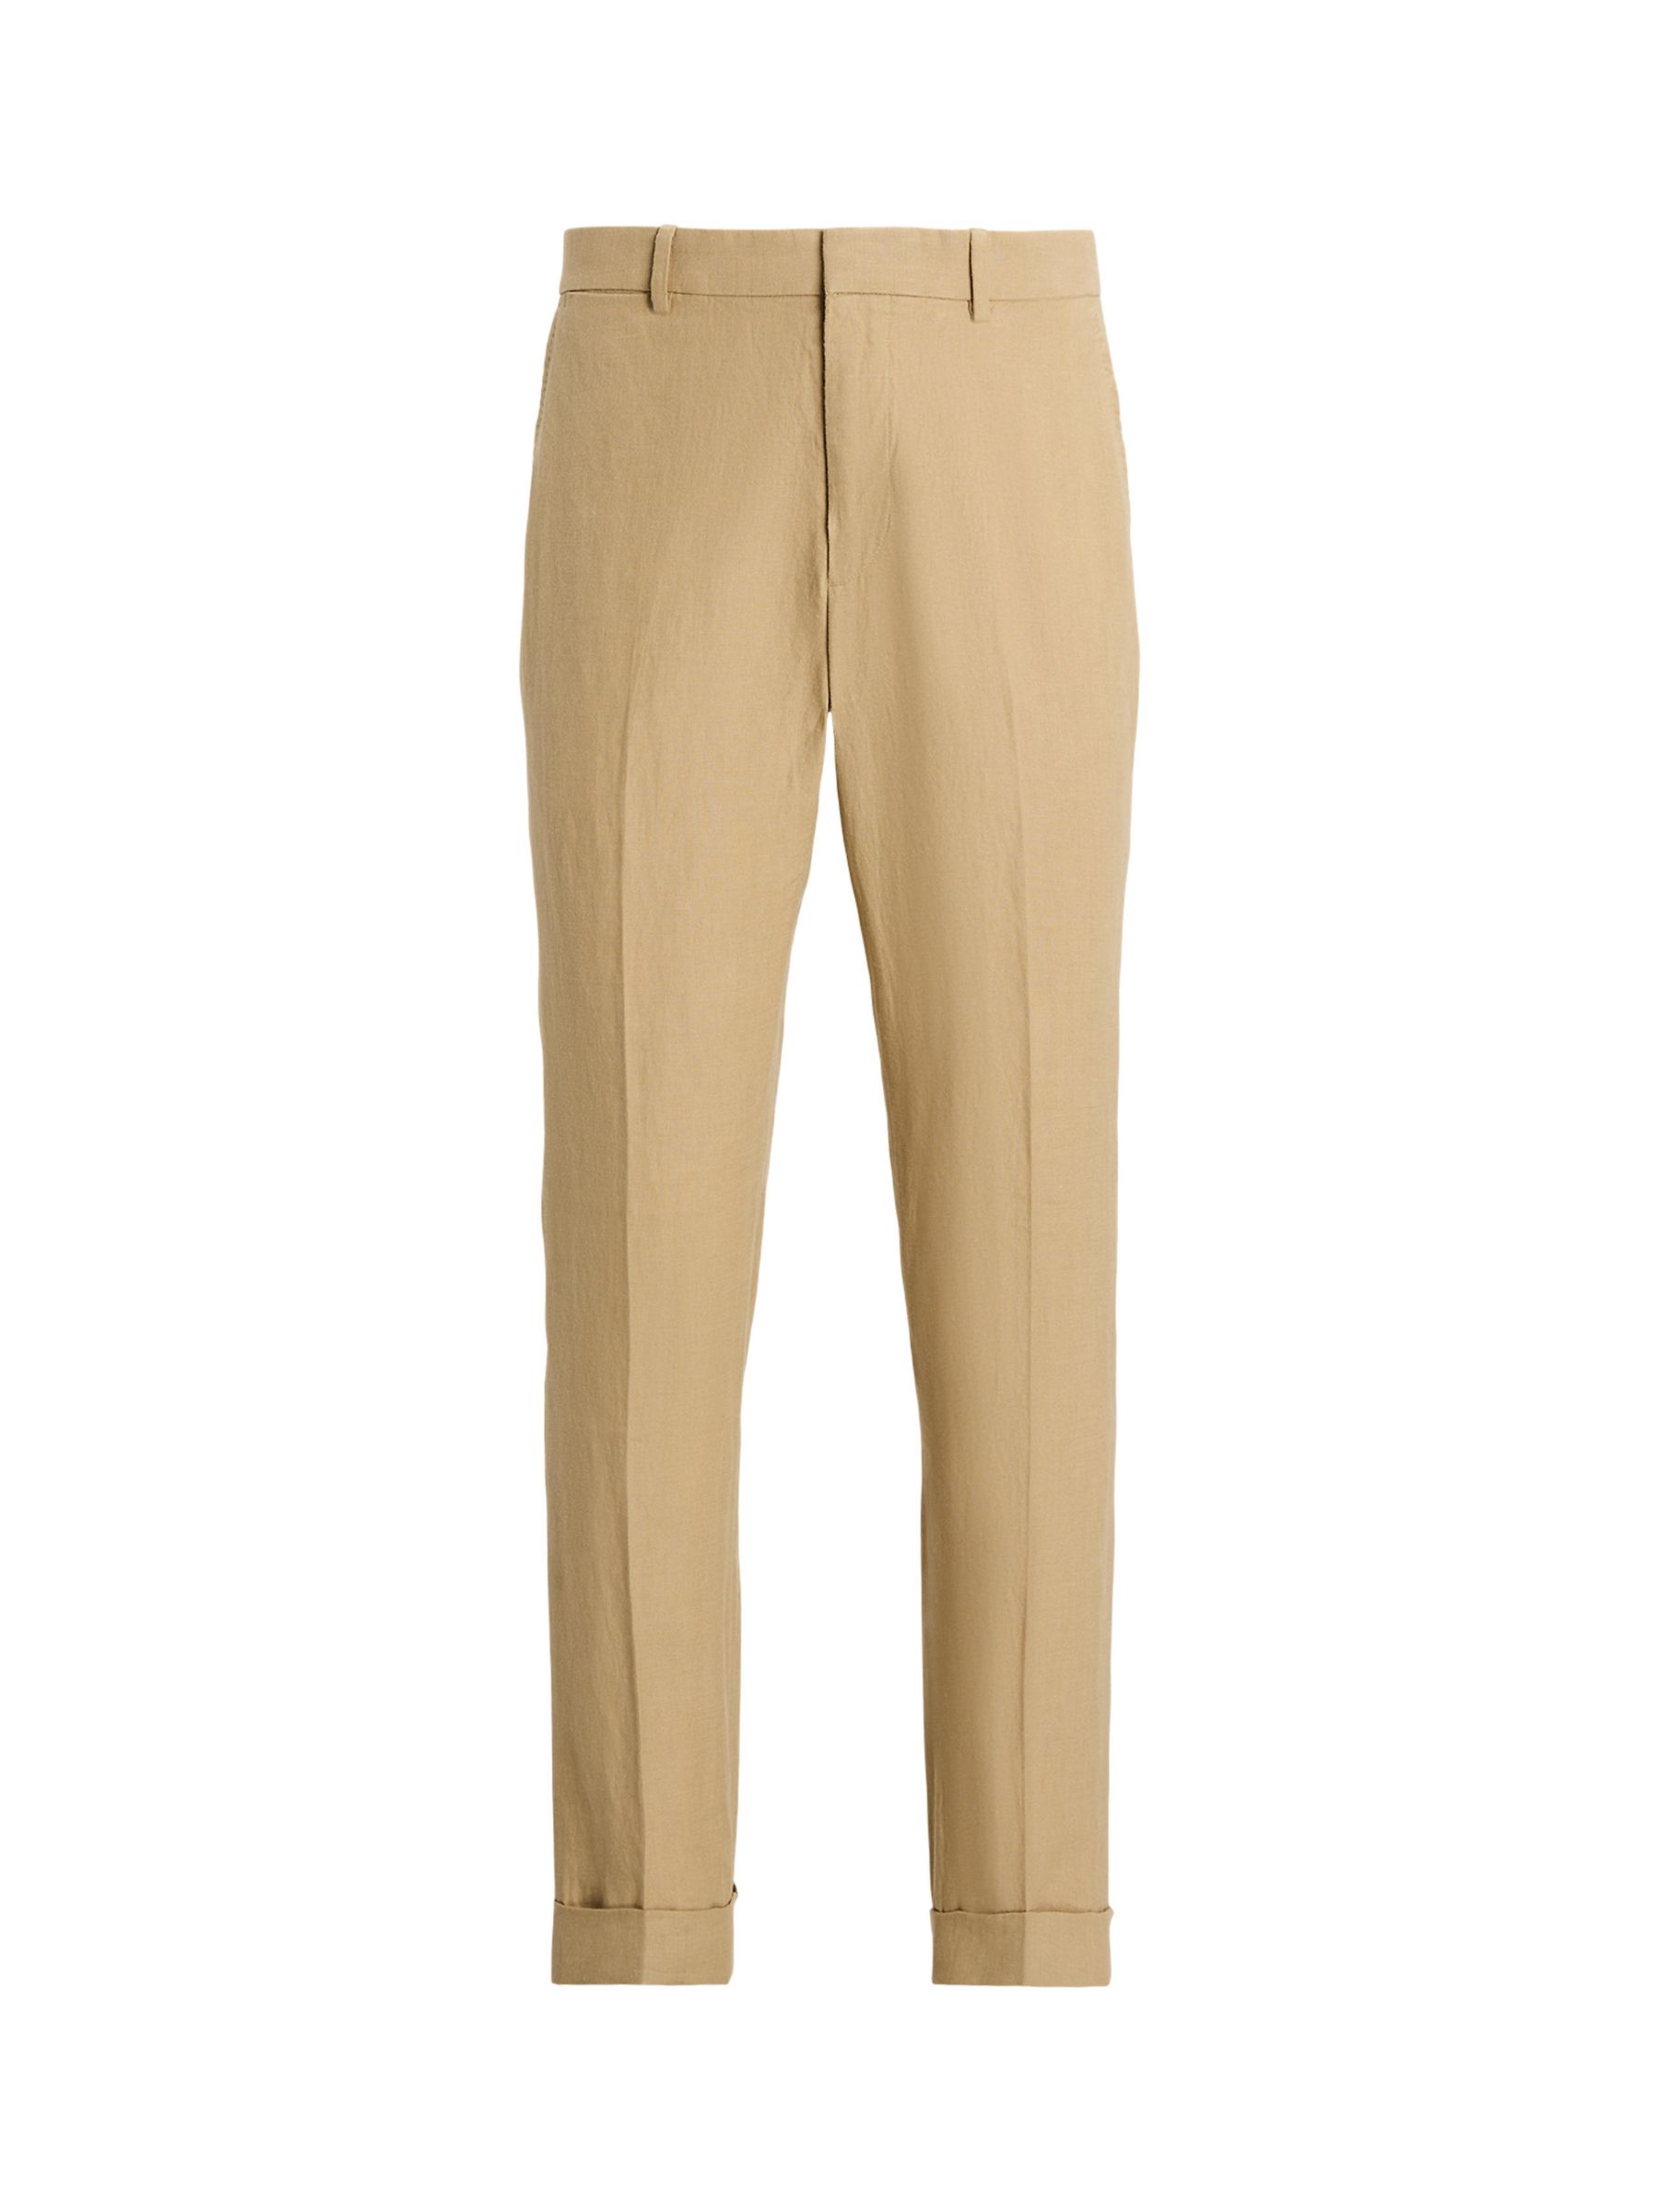 Buy Ralph Lauren Linen Suit Trousers, Beige Online at johnlewis.com